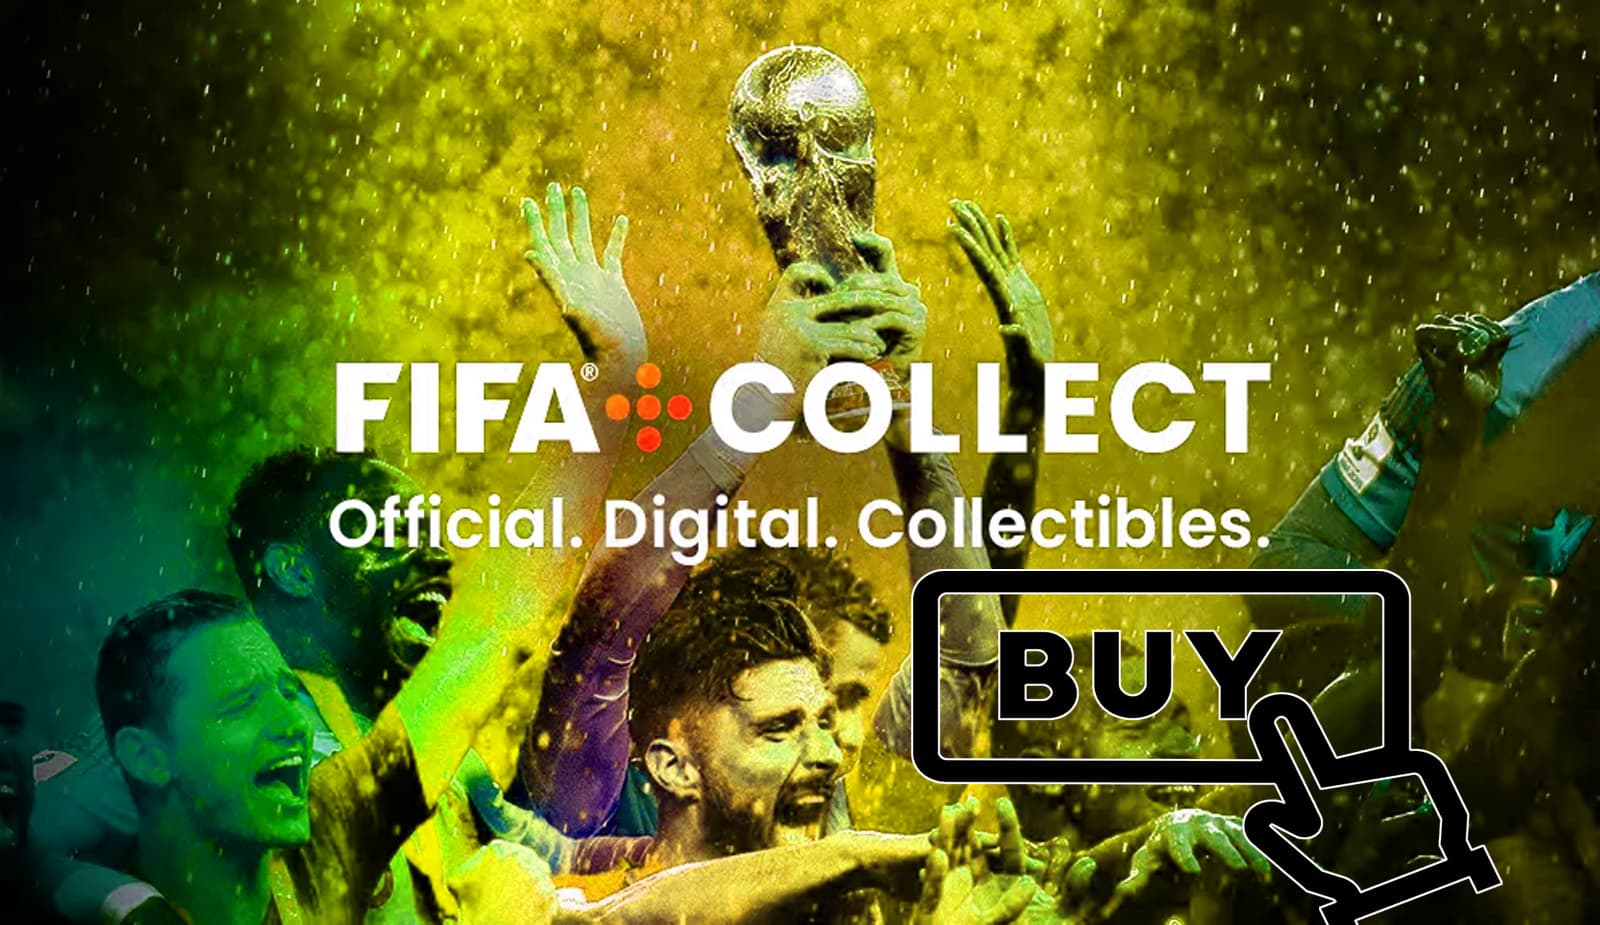 Fifa готовит блокчейн-платформу для покупки коллекционных предметов на базе Algorand. Заглавный коллаж новости.